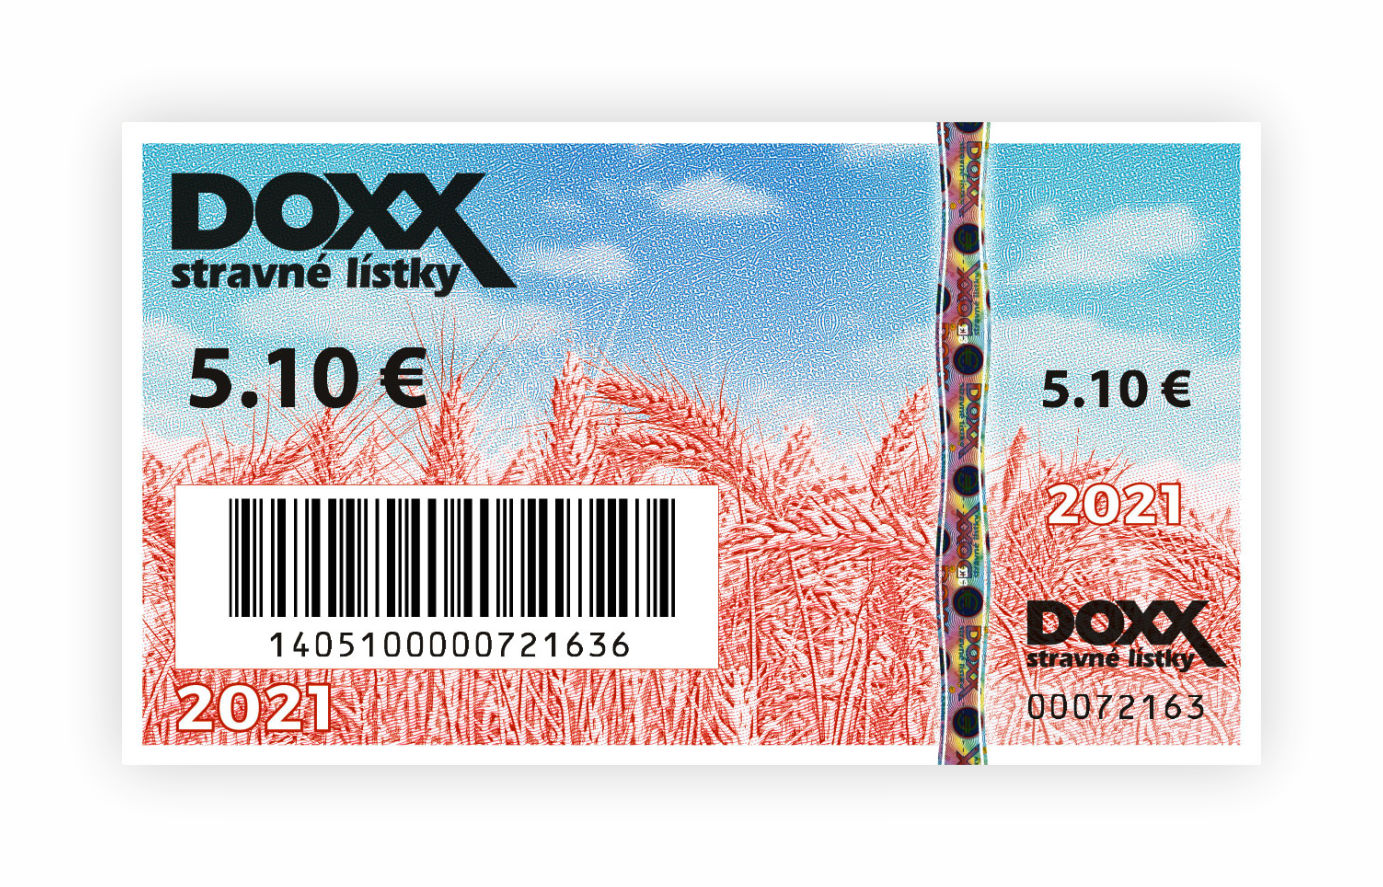 Stravne listky emisia 2021 DOXX - Benefitné darčekové poukážky